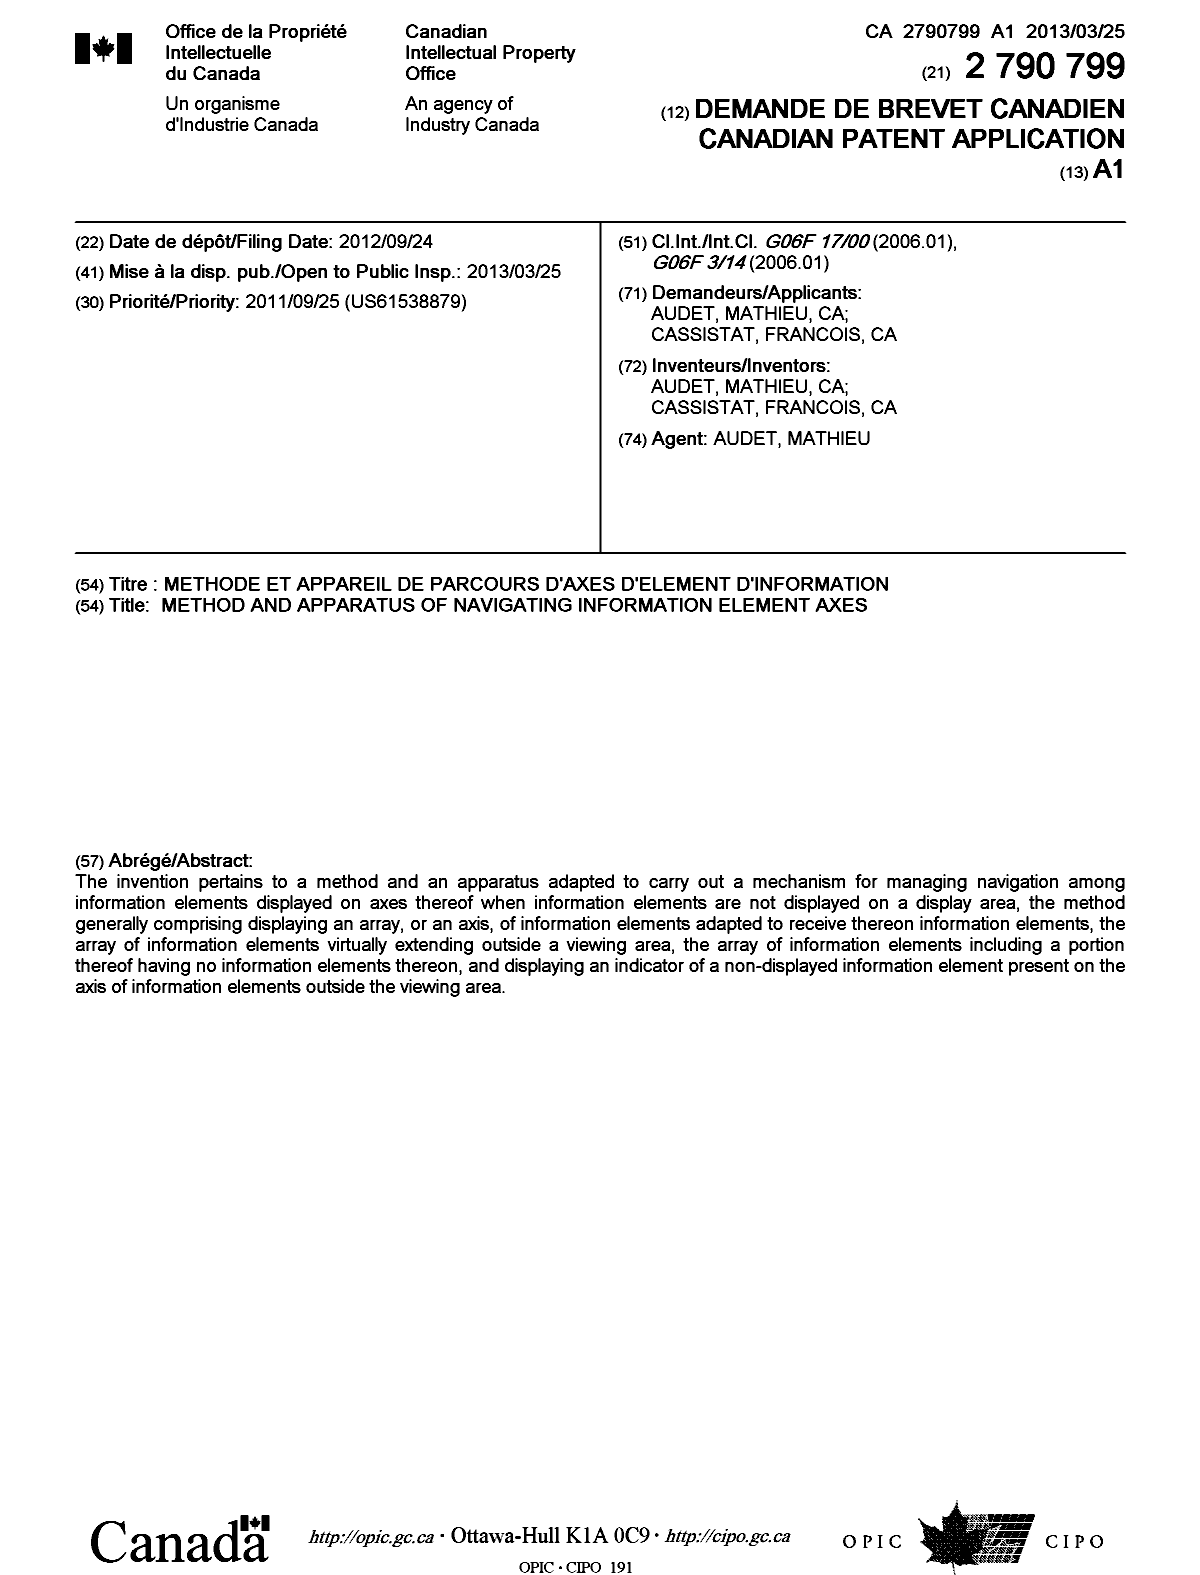 Document de brevet canadien 2790799. Page couverture 20130318. Image 1 de 1